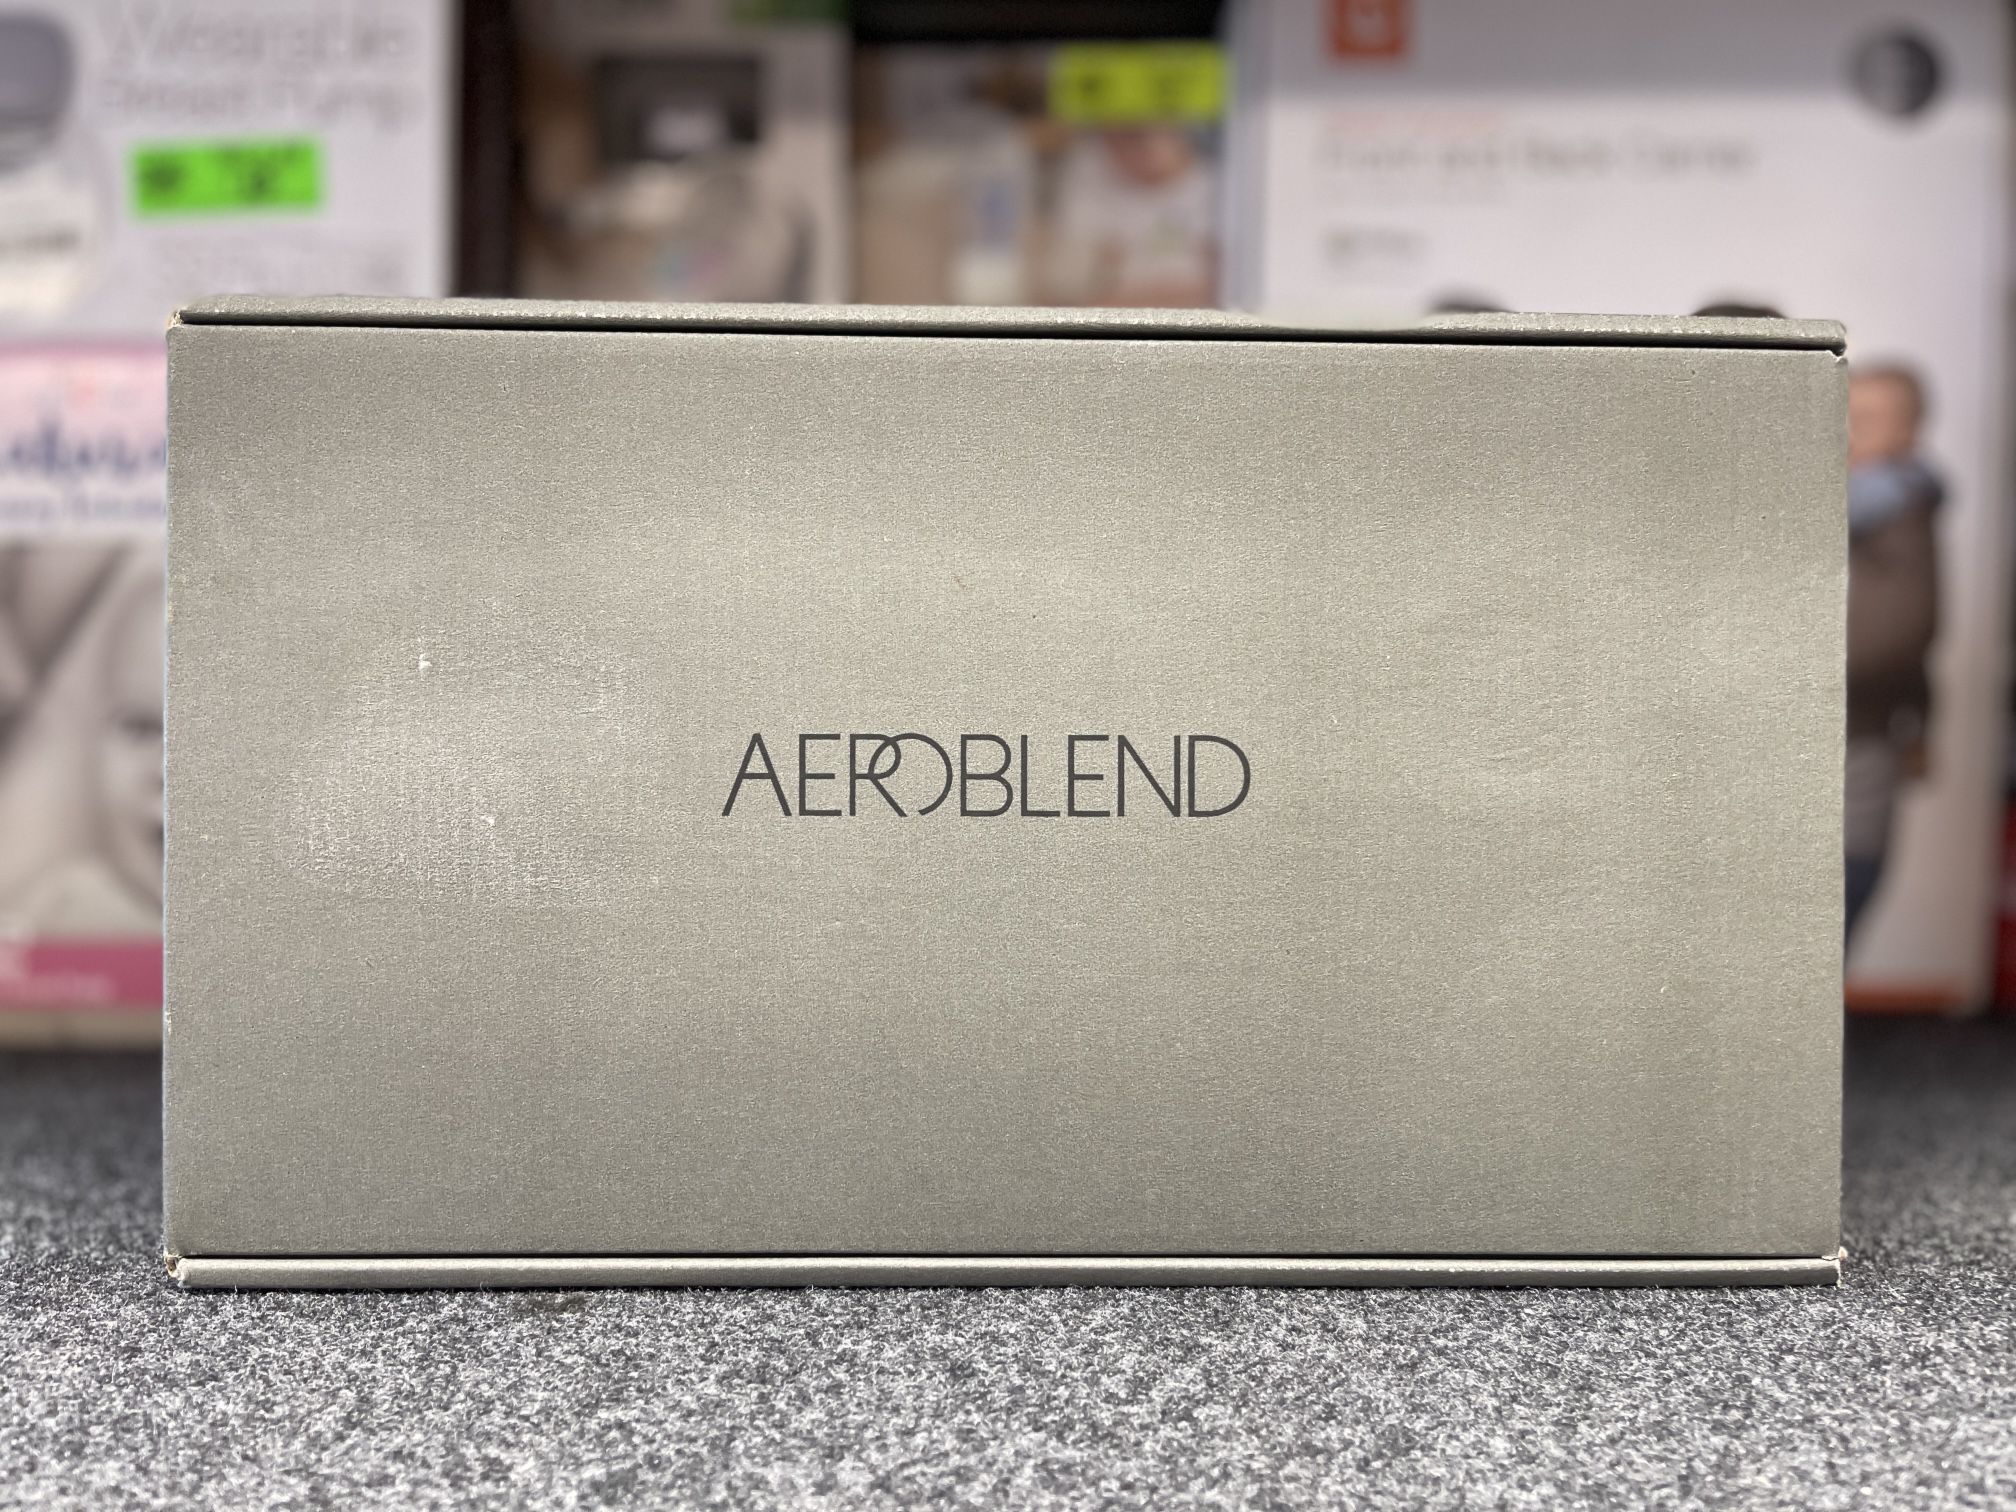 Aeroblend Airbrush Makeup Starter Kit - Open Box